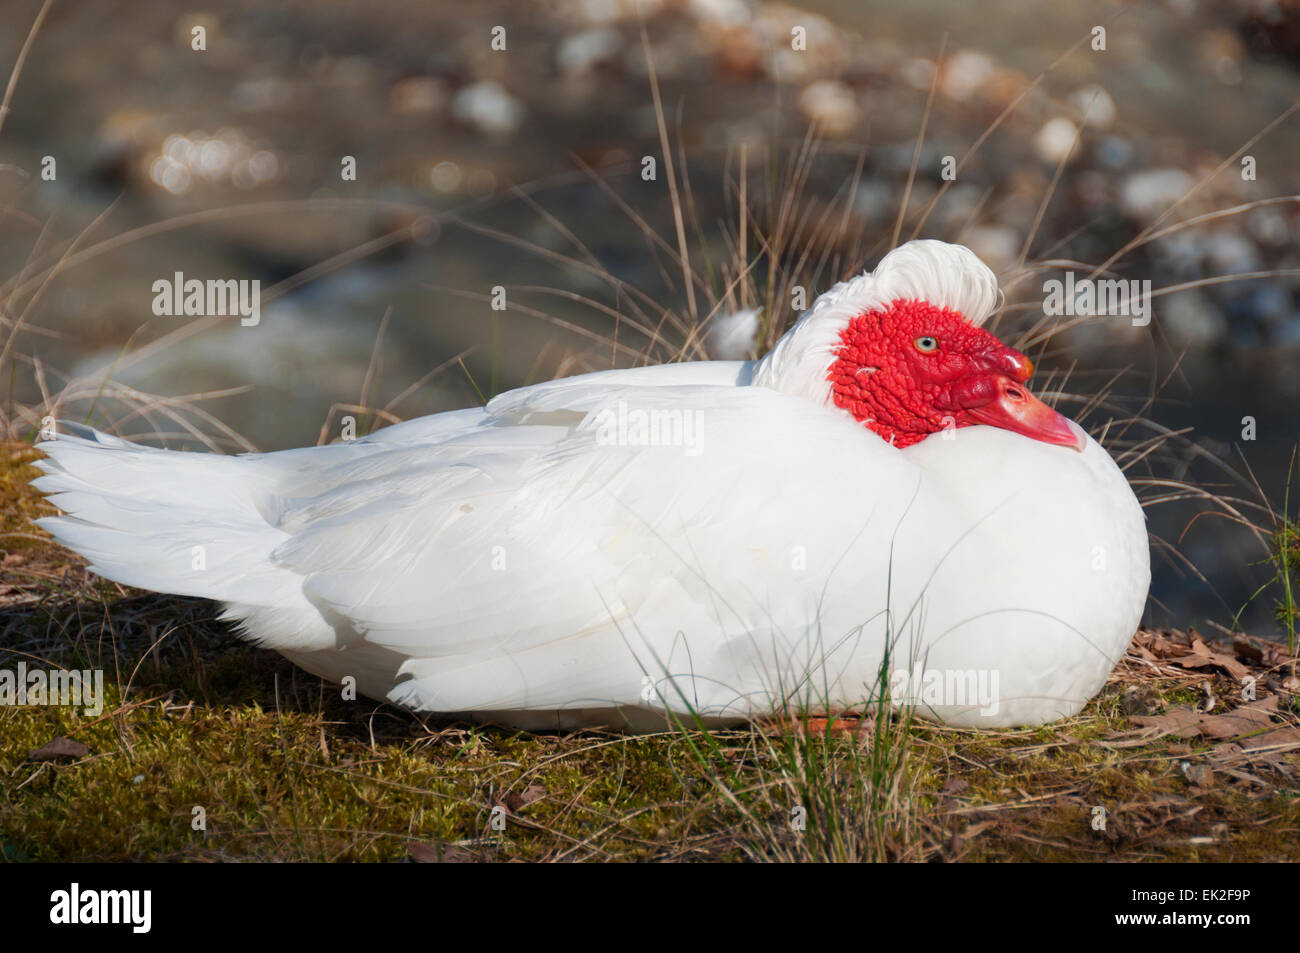 Un pato Muscovy blanco con cara roja, sentados en el suelo Foto de stock